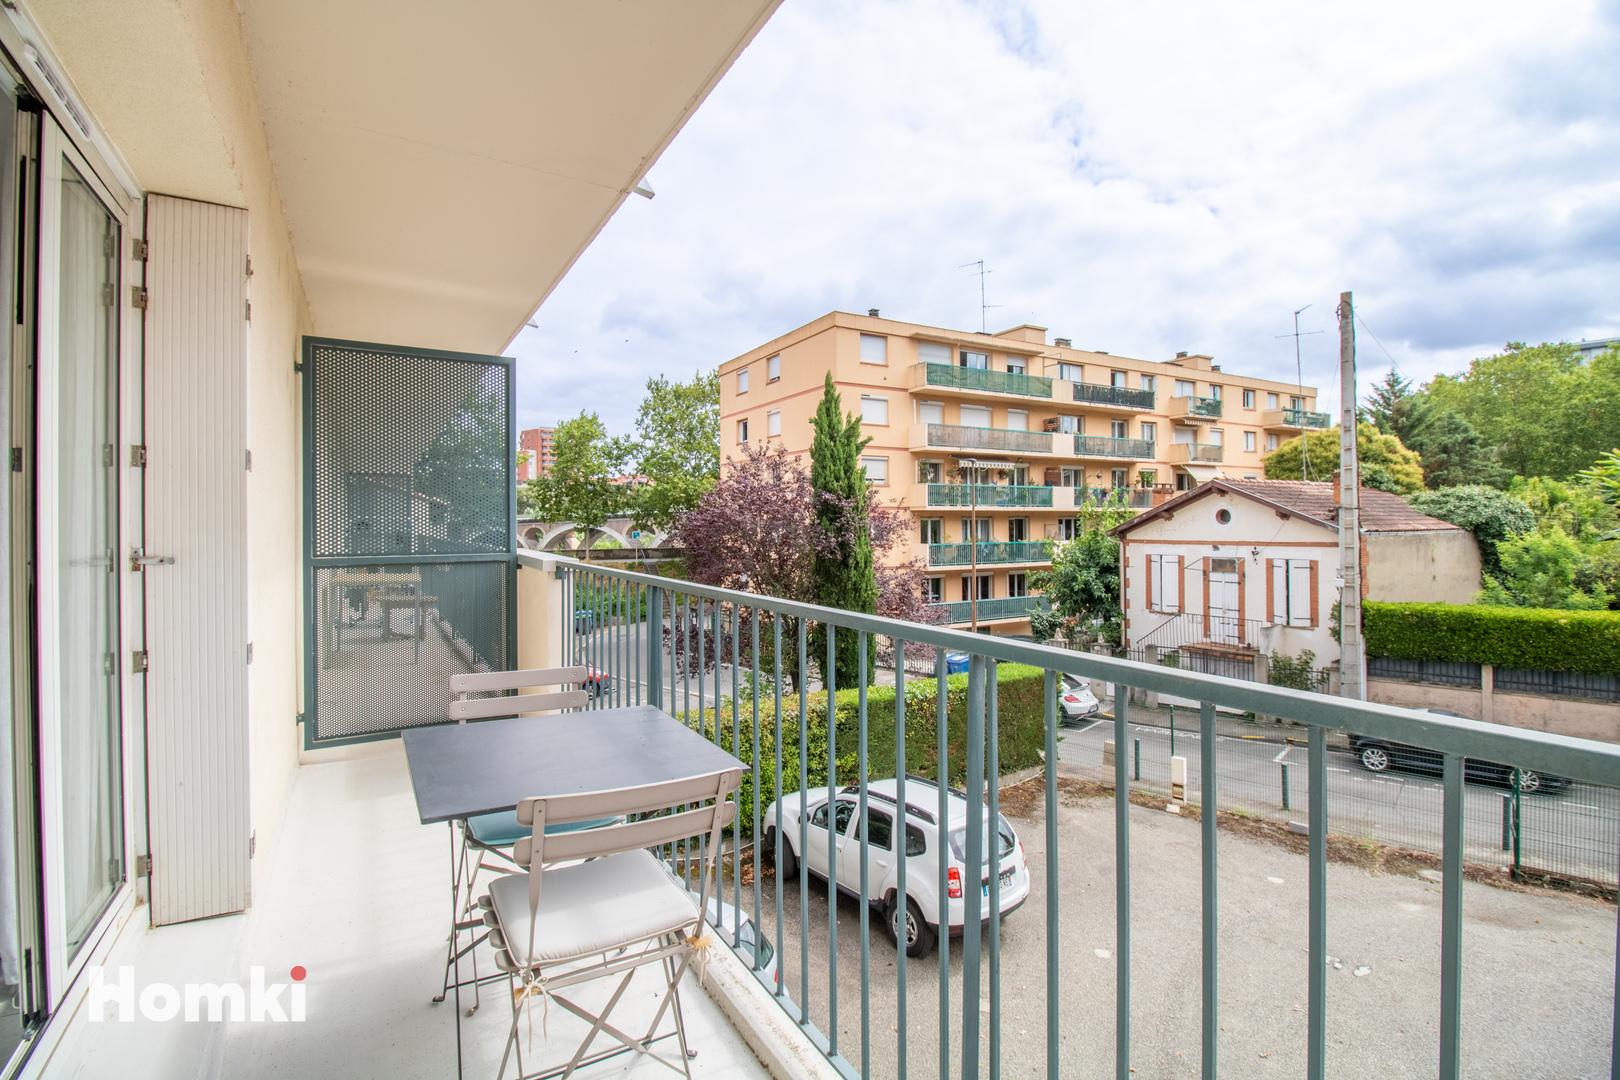 Homki - Vente Appartement  de 76.0 m² à Toulouse 31300